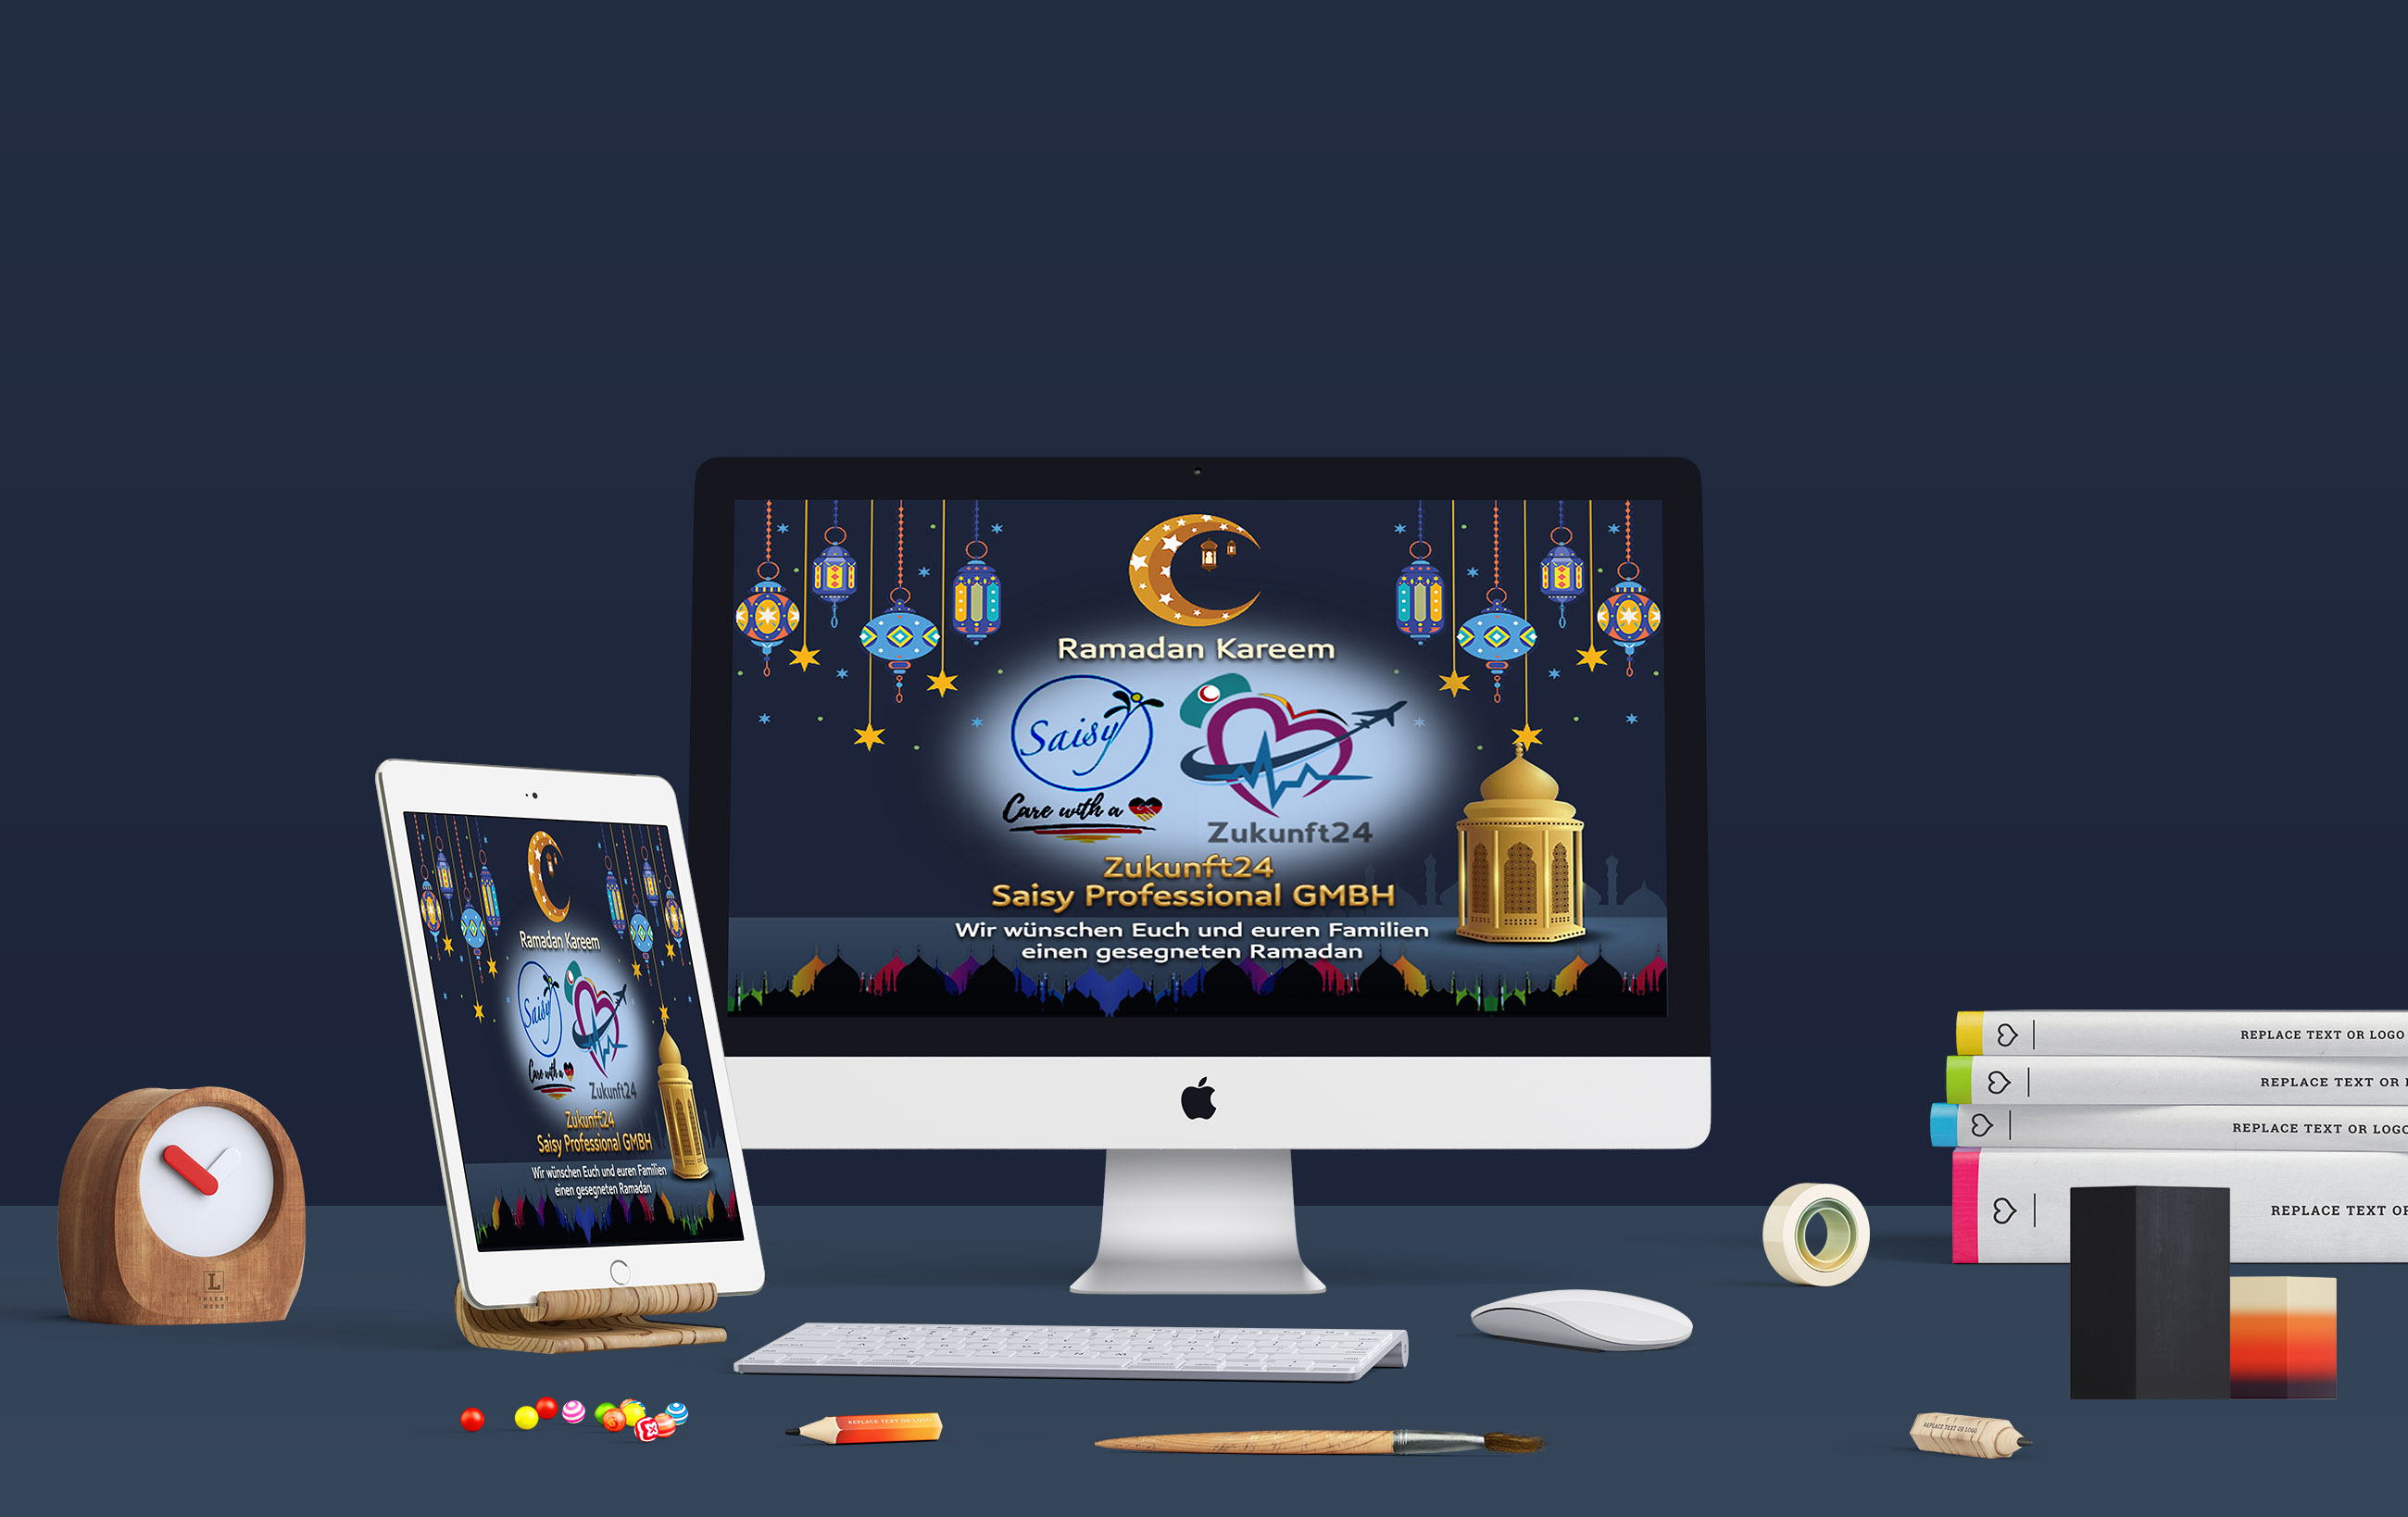 موك اب تصميم إعلان فيسبوك رمضان كريم شركة زوكونفت 24 للتوظيف والوسائط التعليمية